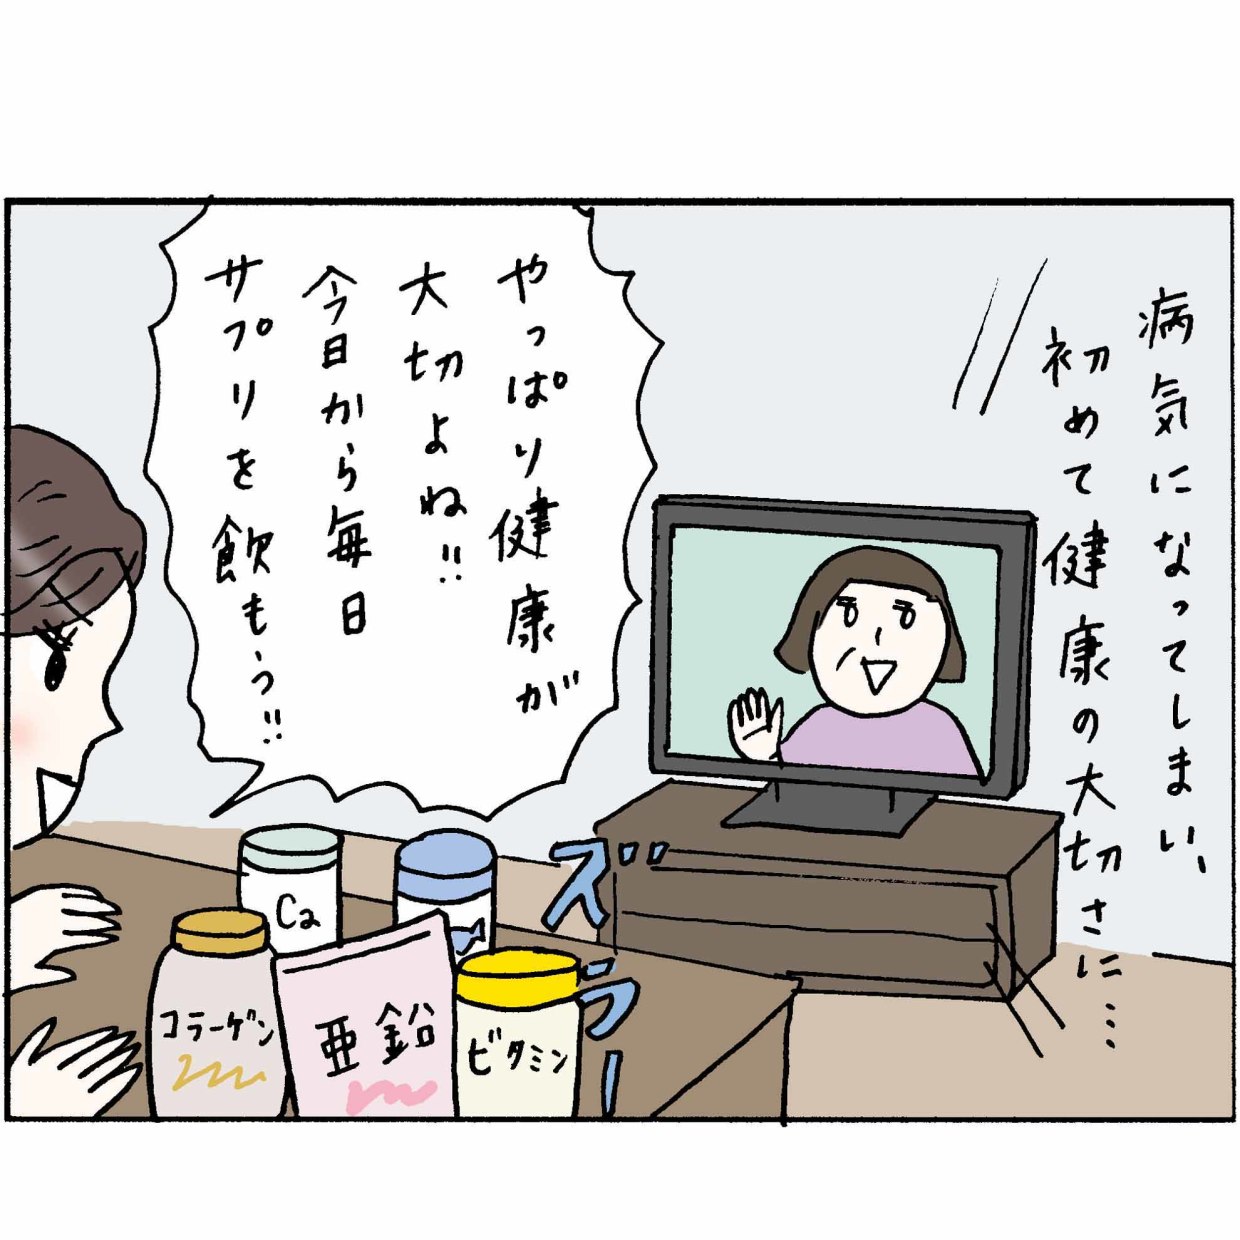  4コマ漫画 “鈴木ゆう子”の日常 